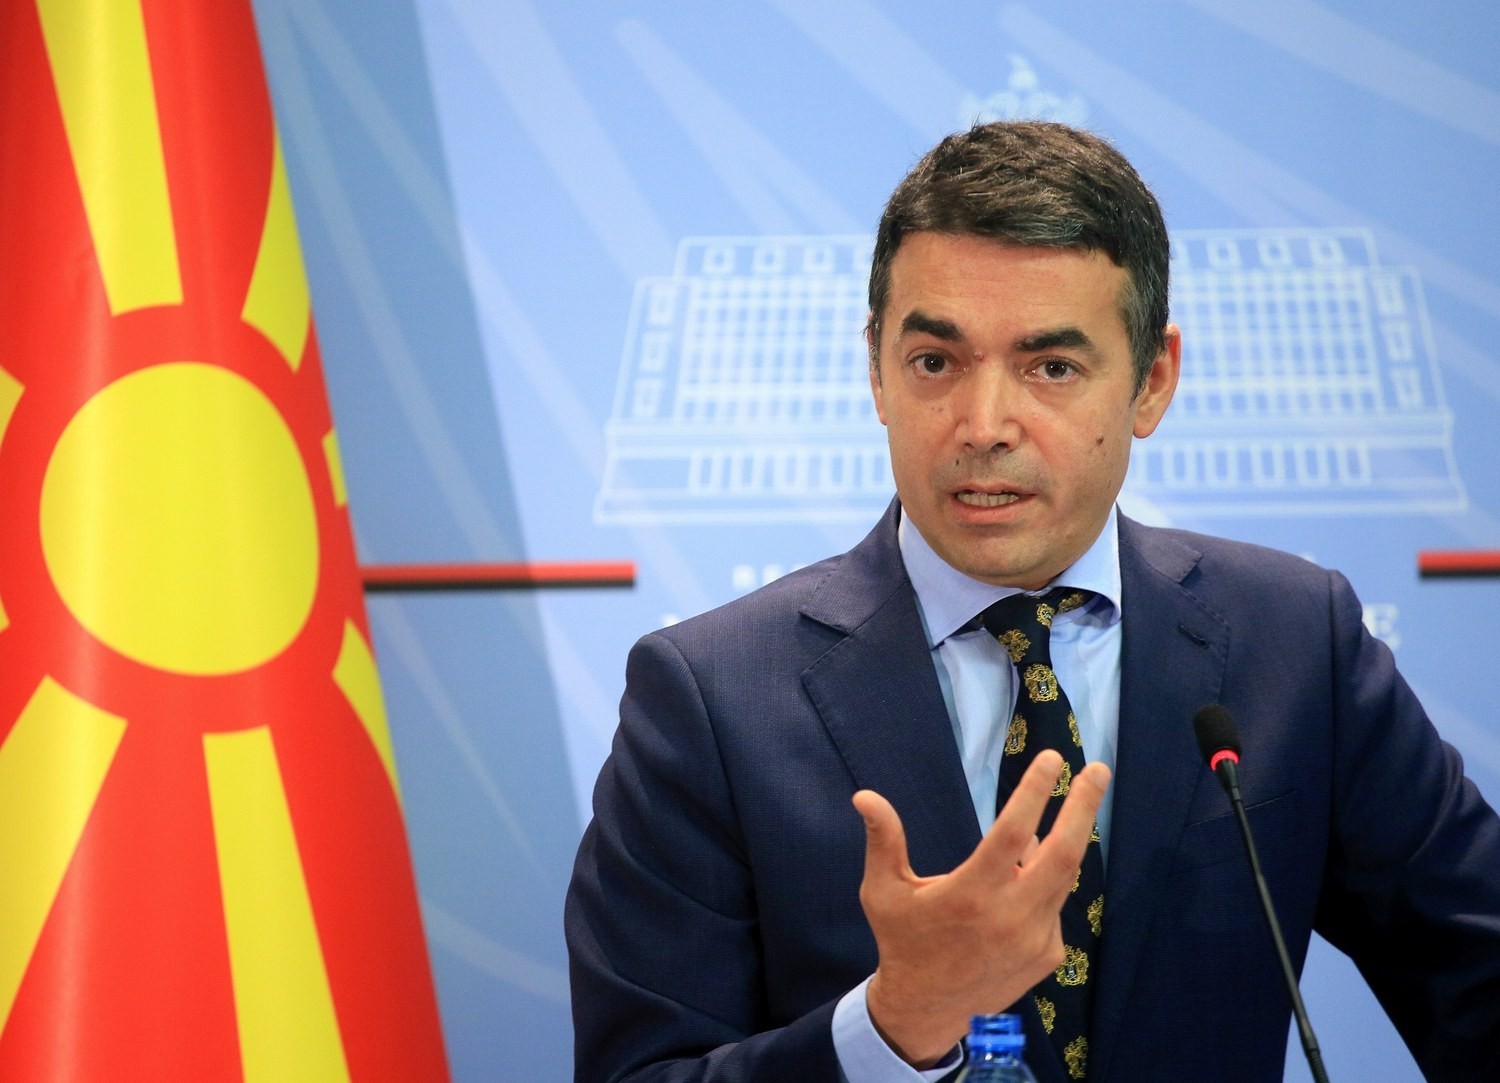 Ντιμιτρόφ: «Η επίτευξη ειδικής πλειοψηφίας στη Βουλή είναι δύσκολη αλλά θα δείξουμε ότι γίνονται θαύματα στα Βαλκάνια»